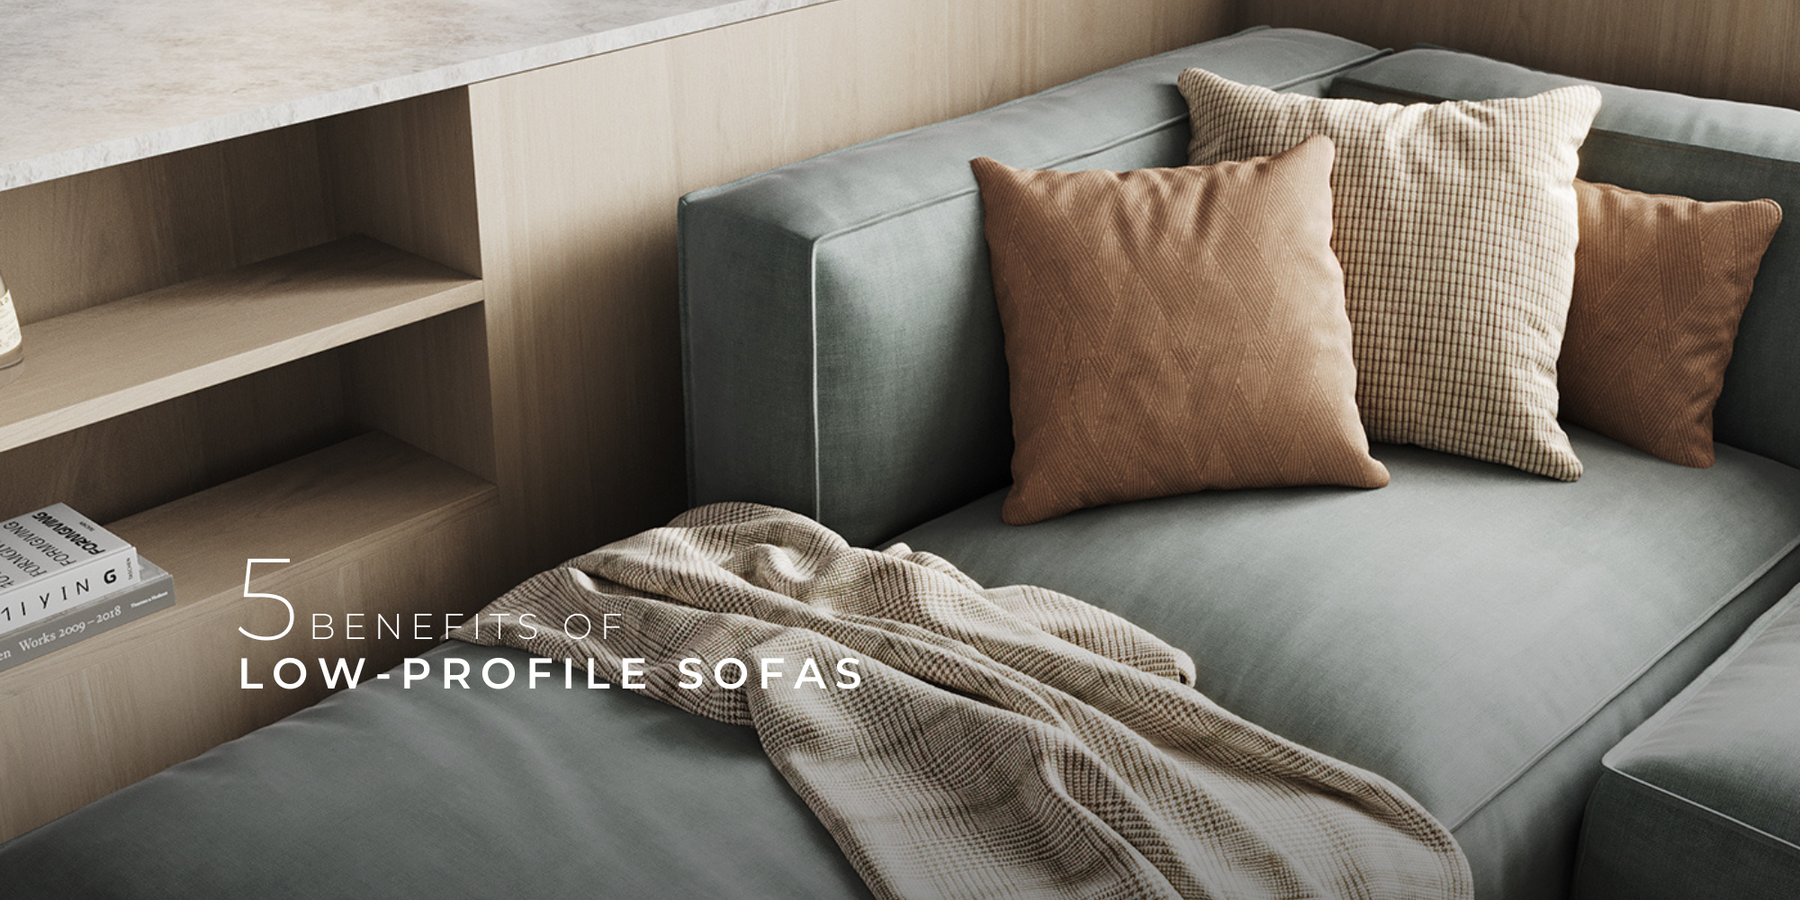 Sofa dáng thấp Abbey màu xanh rêu mang phong cách hiện đại